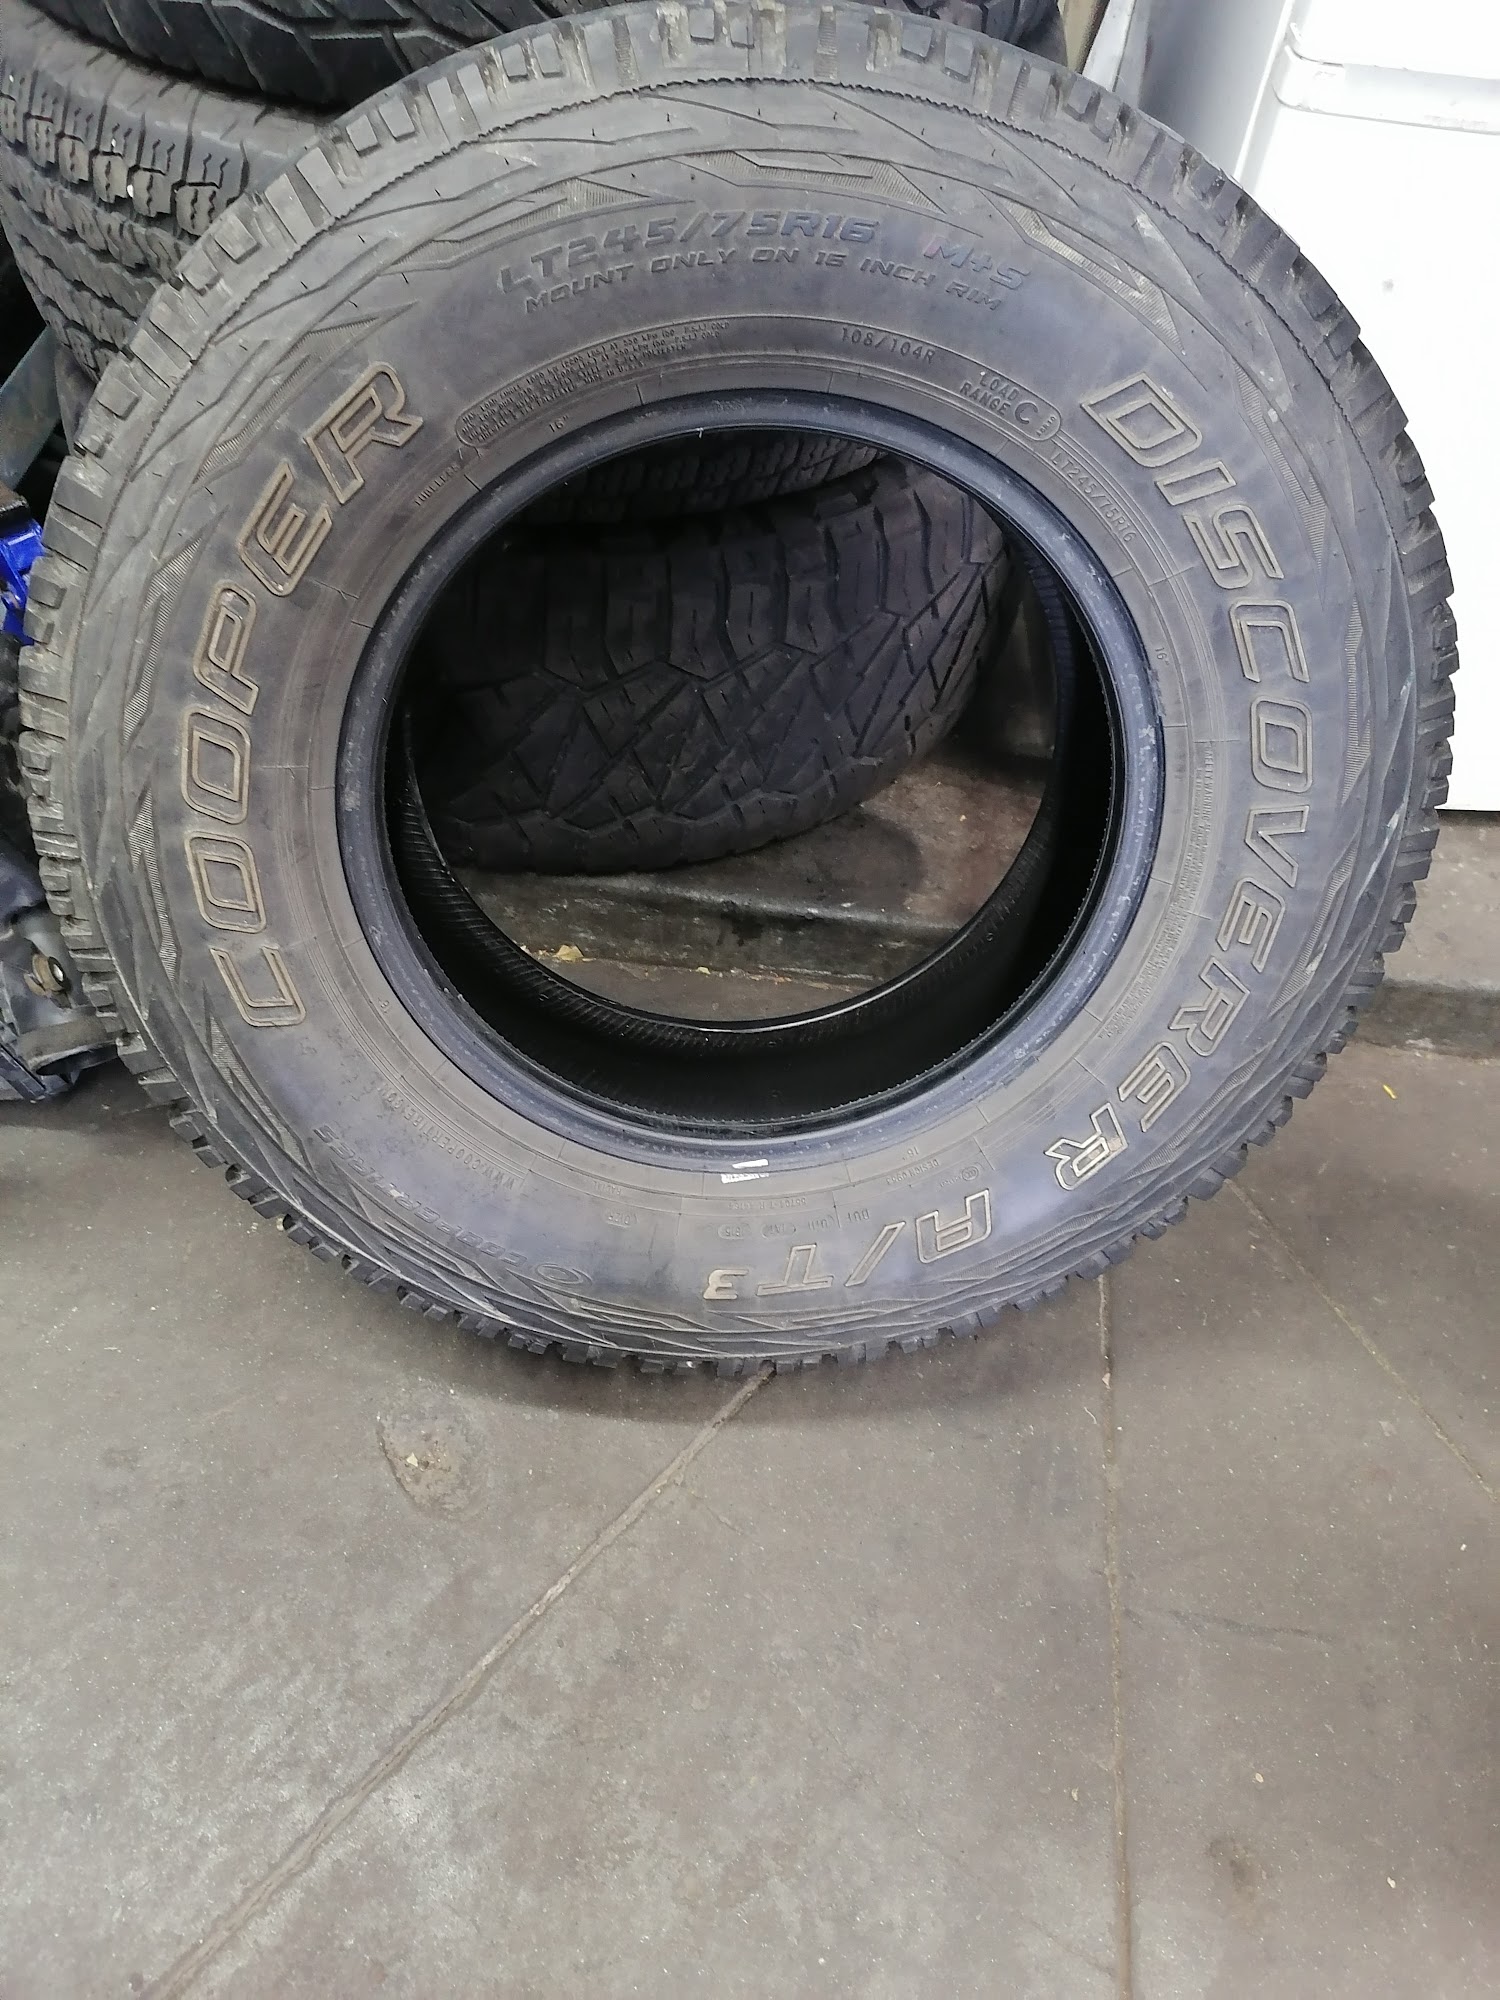 OSORIO'S Tire